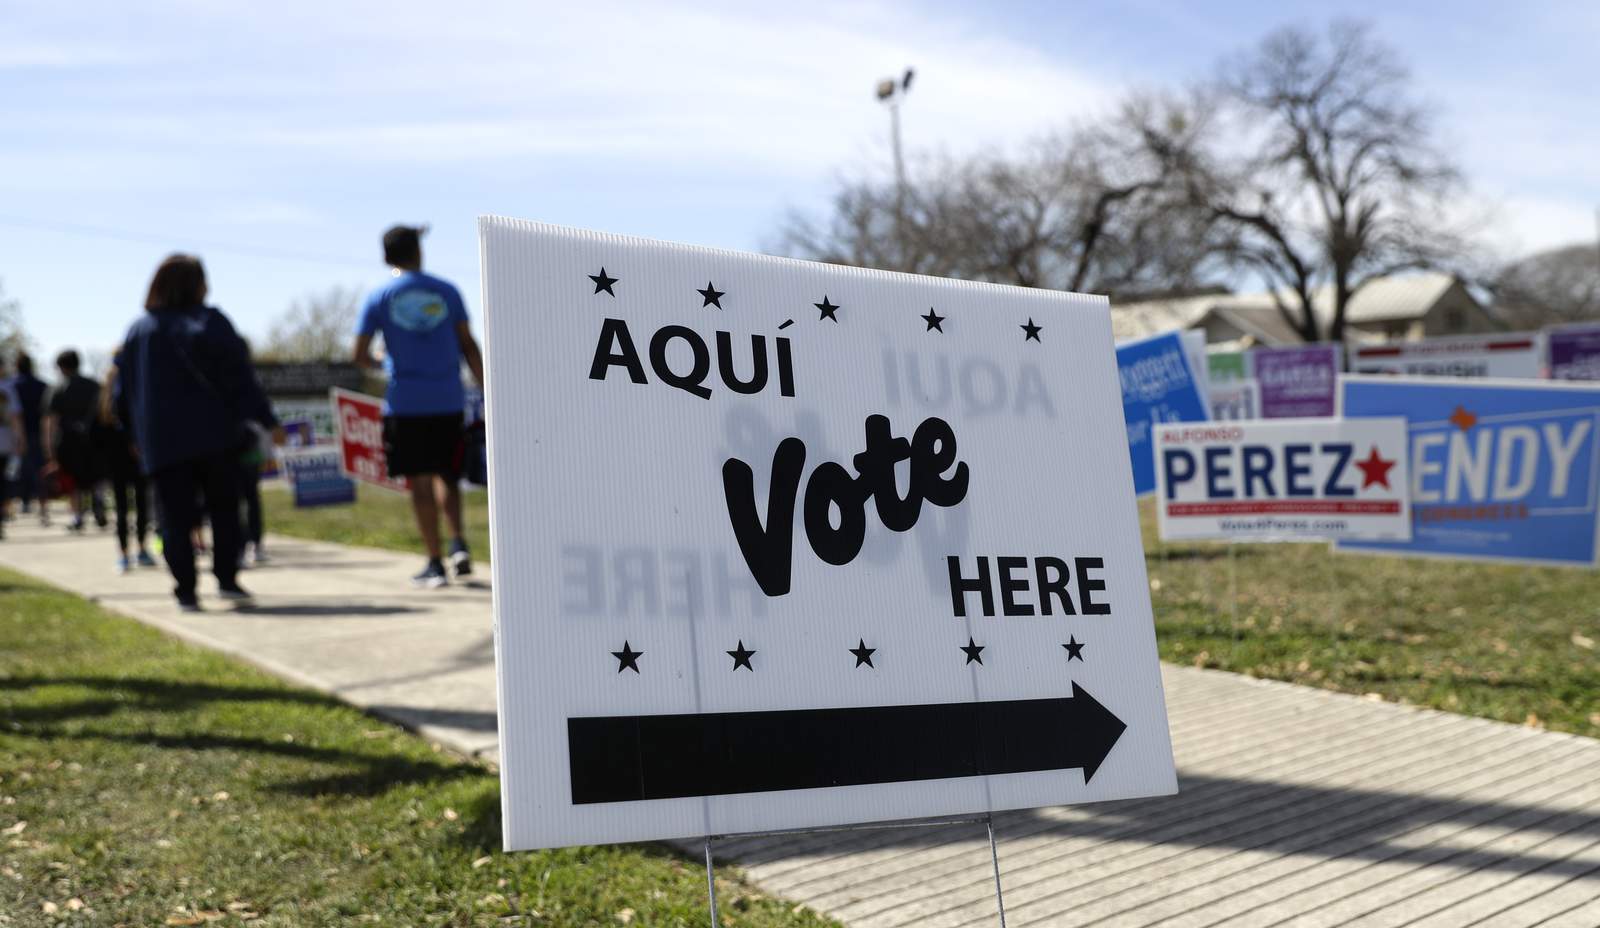 Asiste a votaciones tempranas en Bexar County